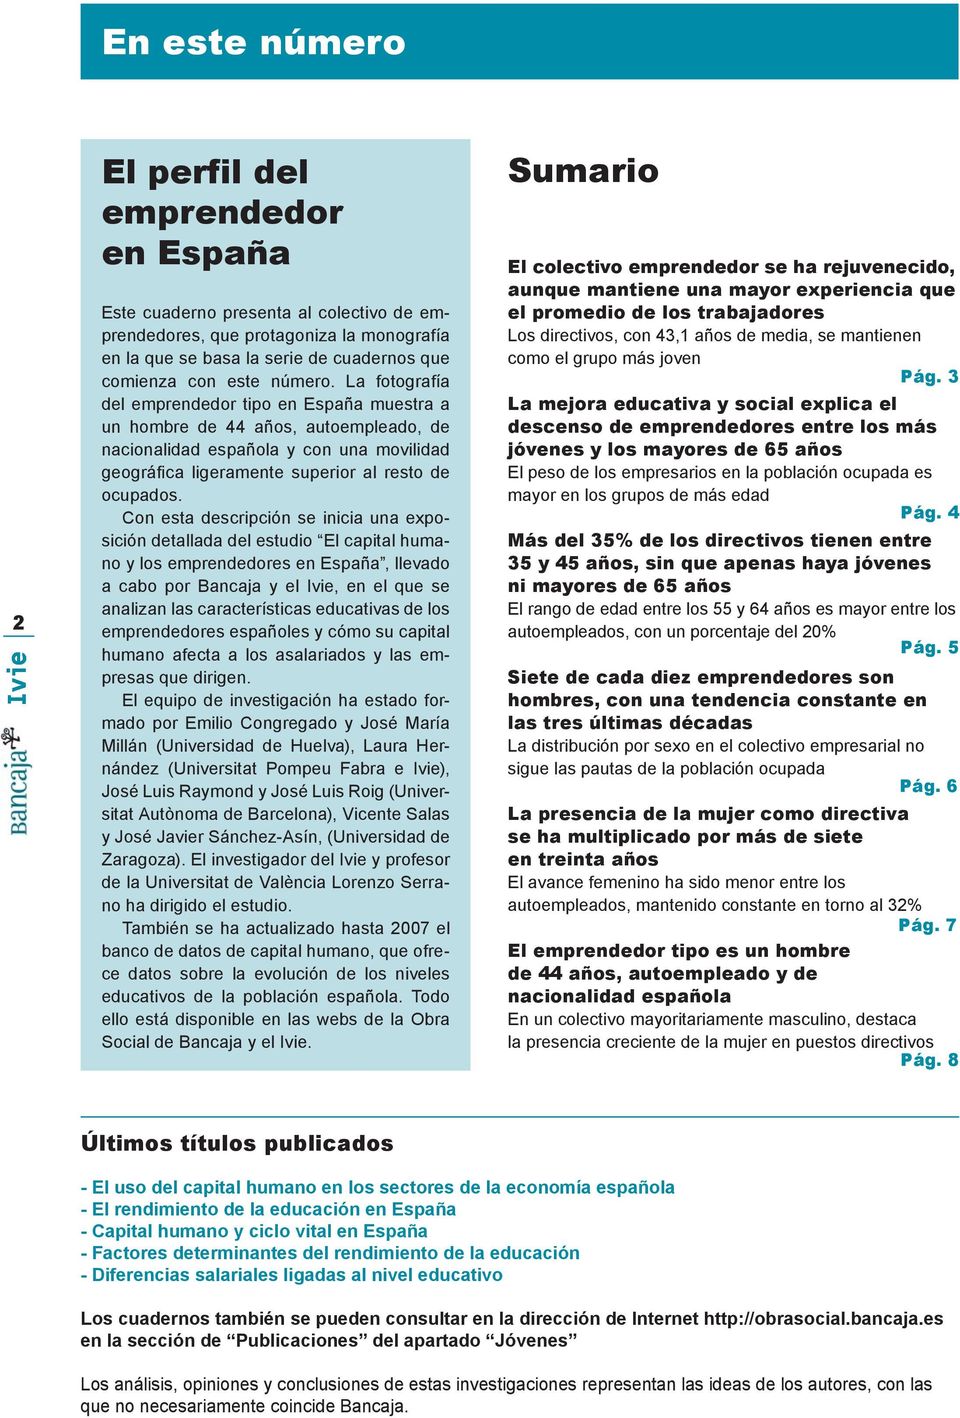 Con esta descripción se inicia una exposición detallada del estudio El capital humano y los emprendedores en España, llevado a cabo por Bancaja y el Ivie, en el que se analizan las características